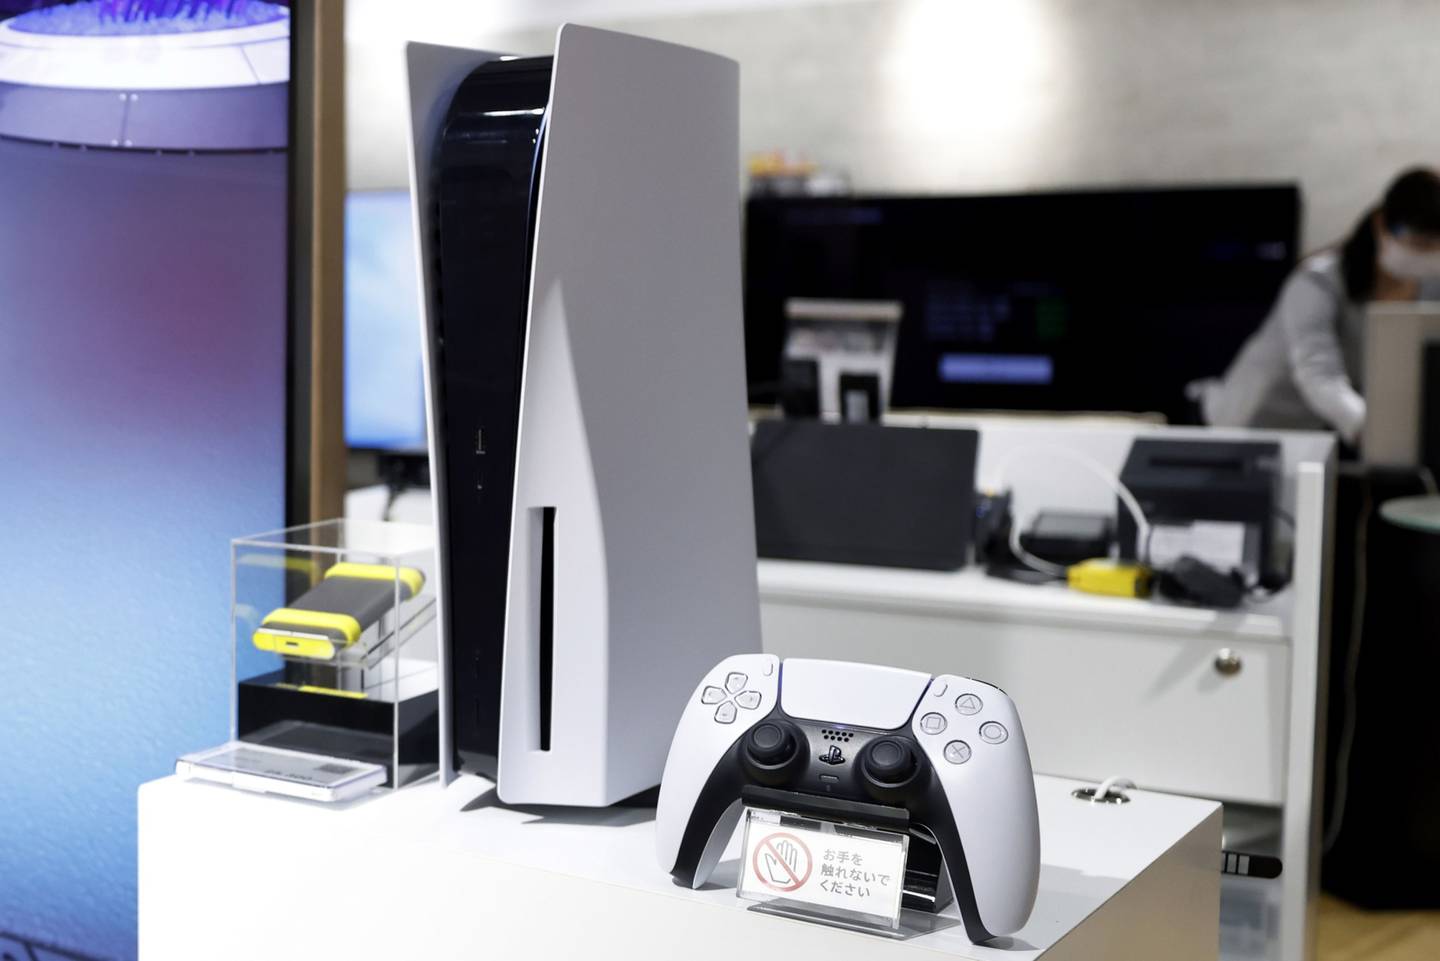 Un videojuego de Sony Group Corp. PlayStation 5 (PS5) y un mando expuestos en la sala de exposiciones de la compañía dentro del edificio Ginza Place en Tokio, Japón, el miércoles 27 de octubre de 2021. Está previsto que Sony publique sus cifras de resultados el 28 de octubre.dfd